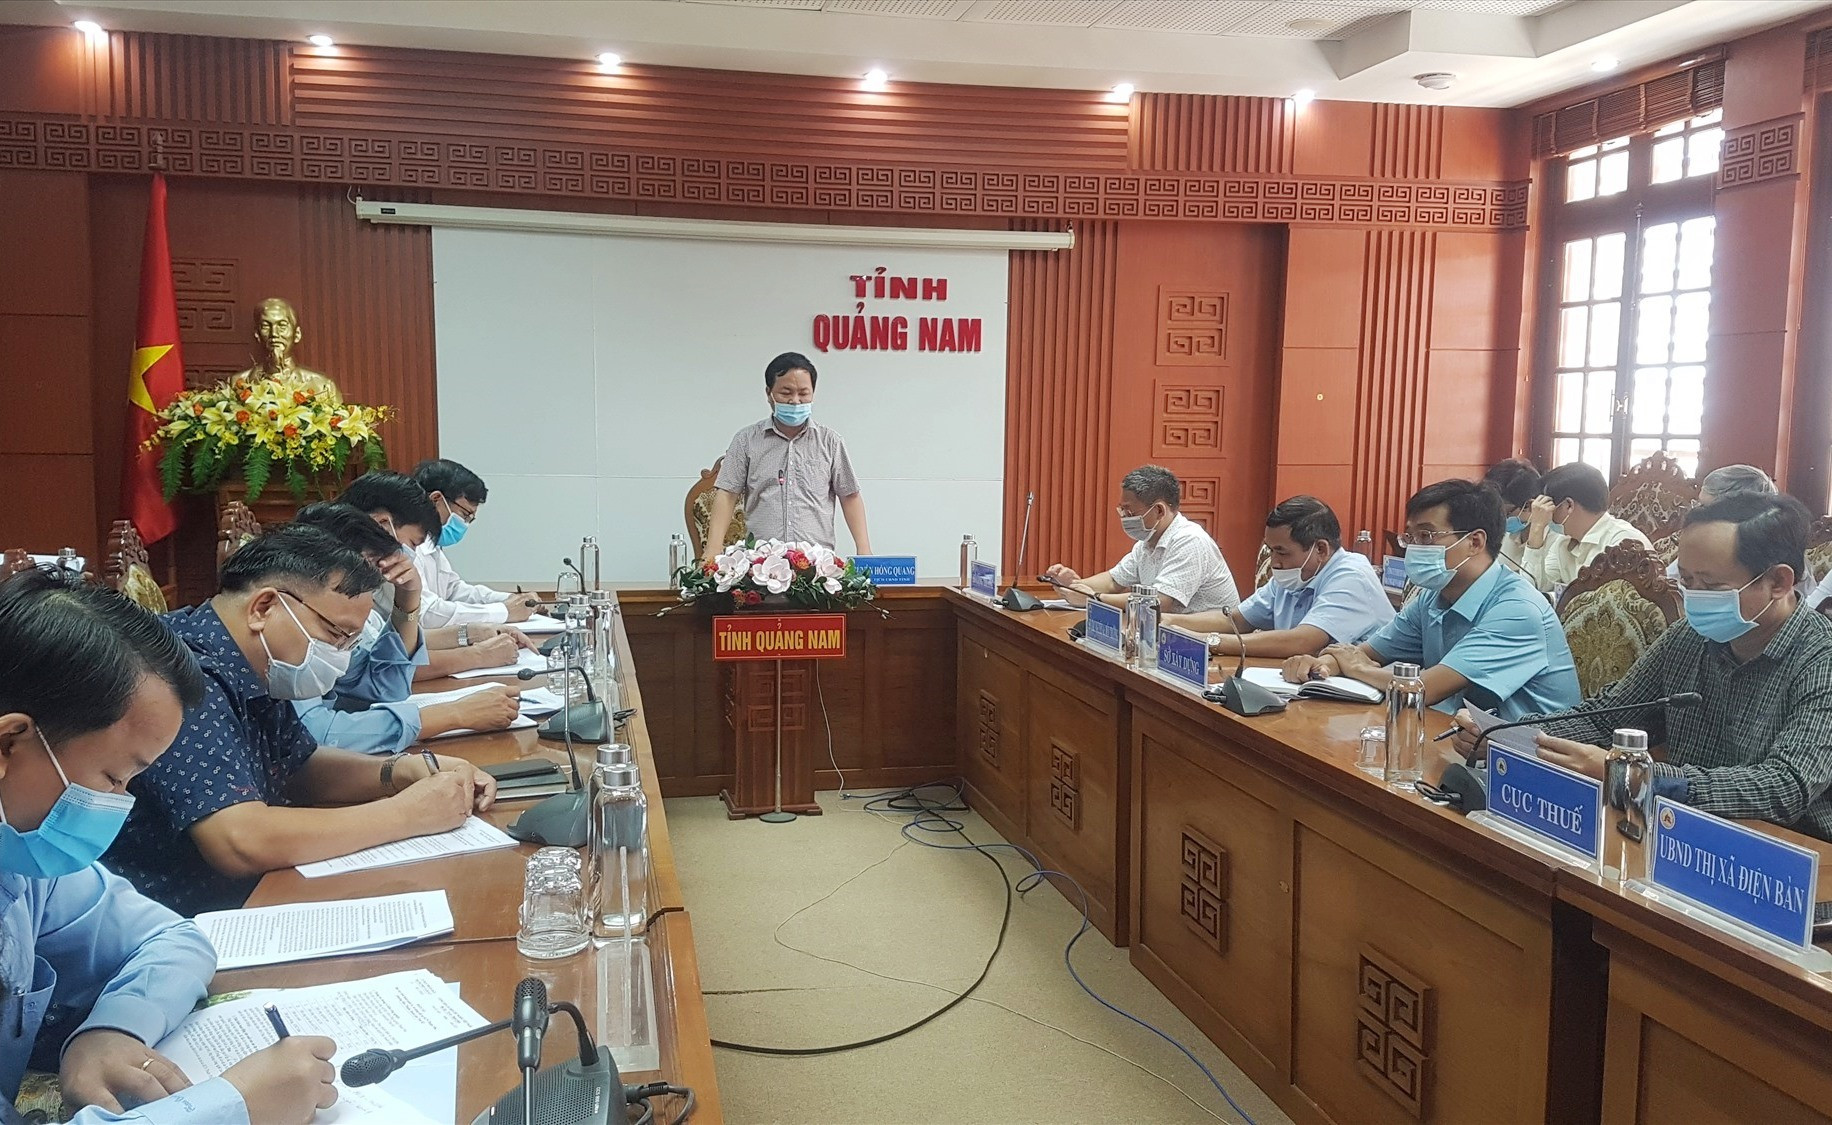 Phó Chủ tịch UBND tỉnh Nguyễn Hồng Quang chủ trì buổi làm việc sáng nay. Ảnh: D.L